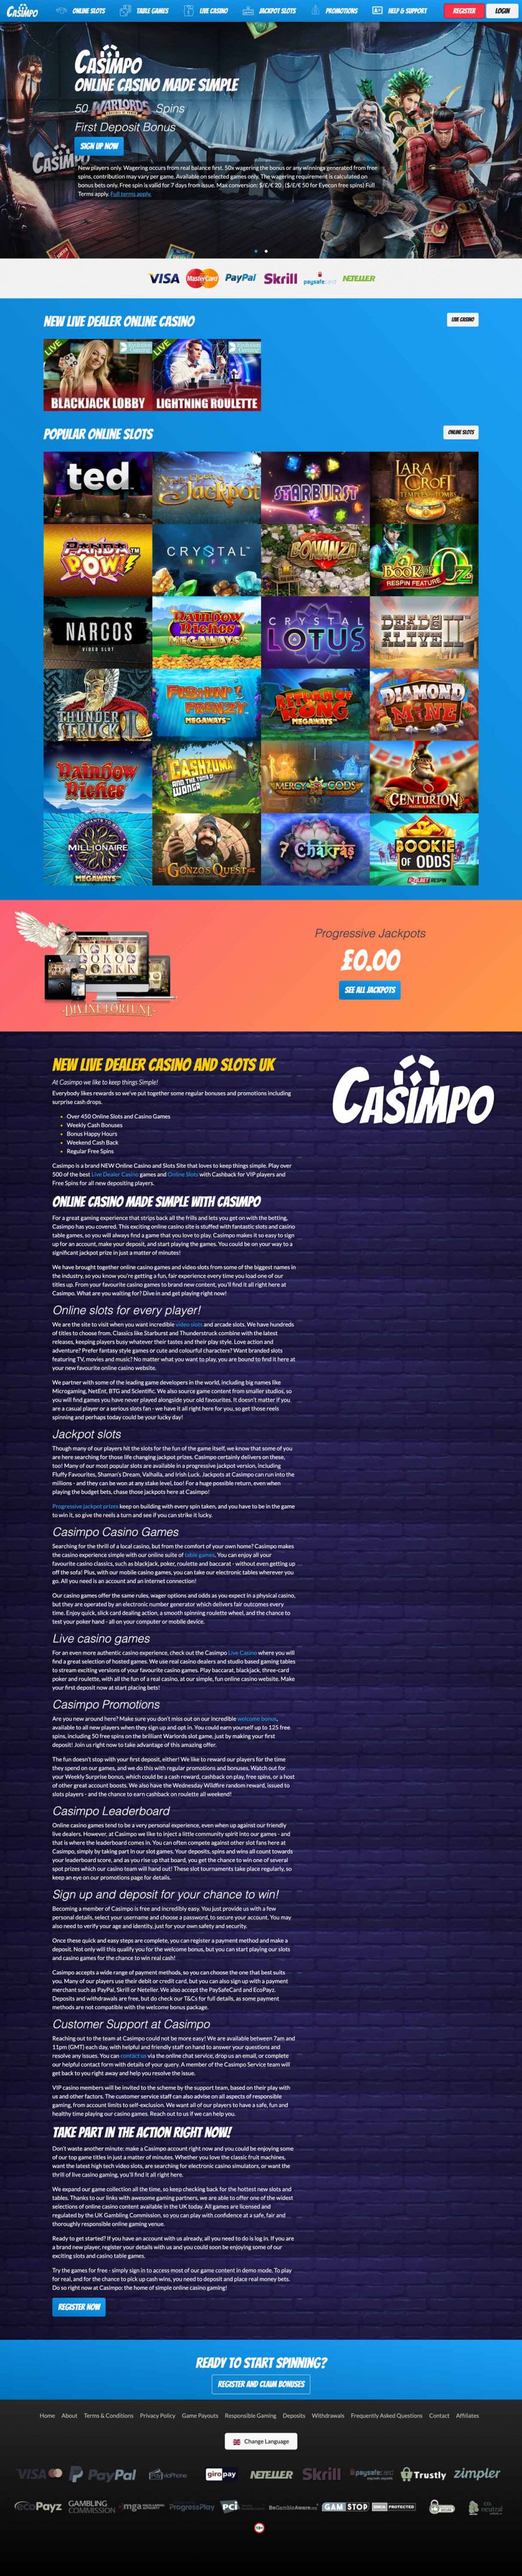 Casimpo Casino  screenshot